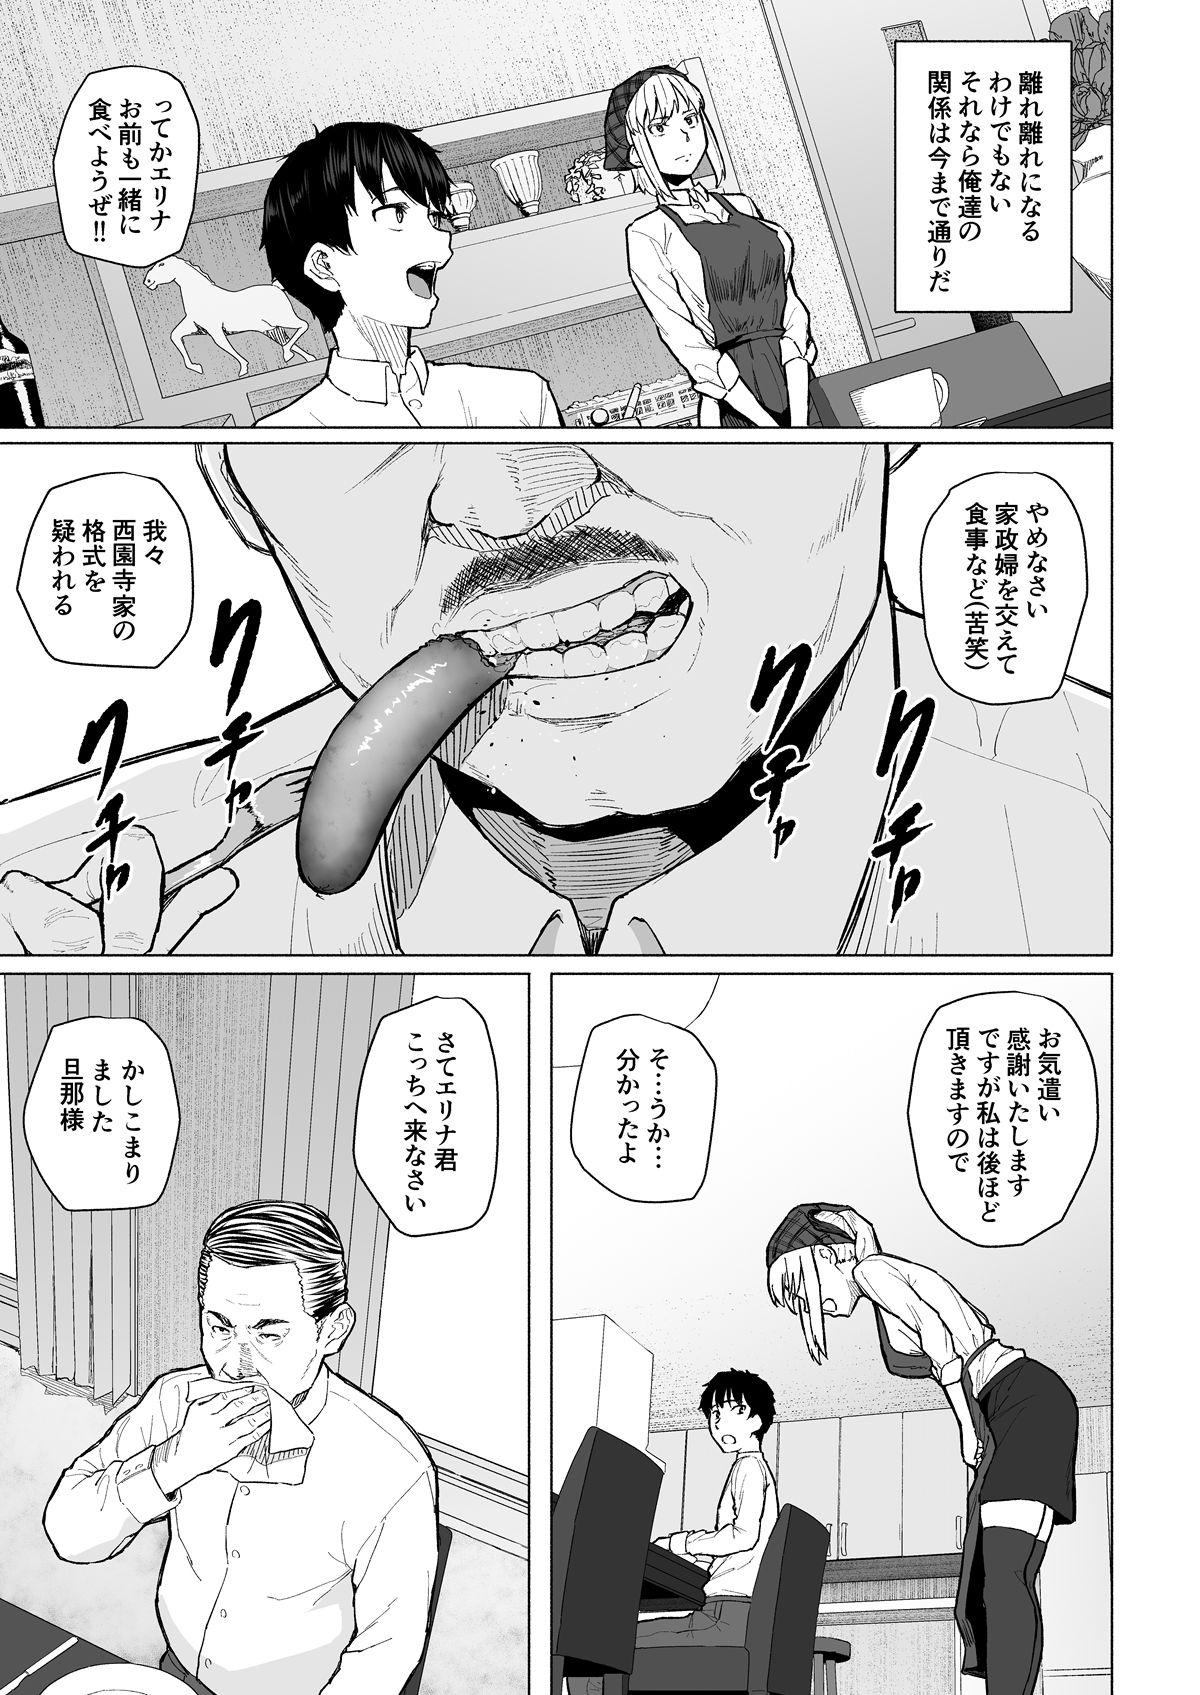 Married Botsu ni Shita Ero Manga 2 Project aborted Butt Sex - Page 4